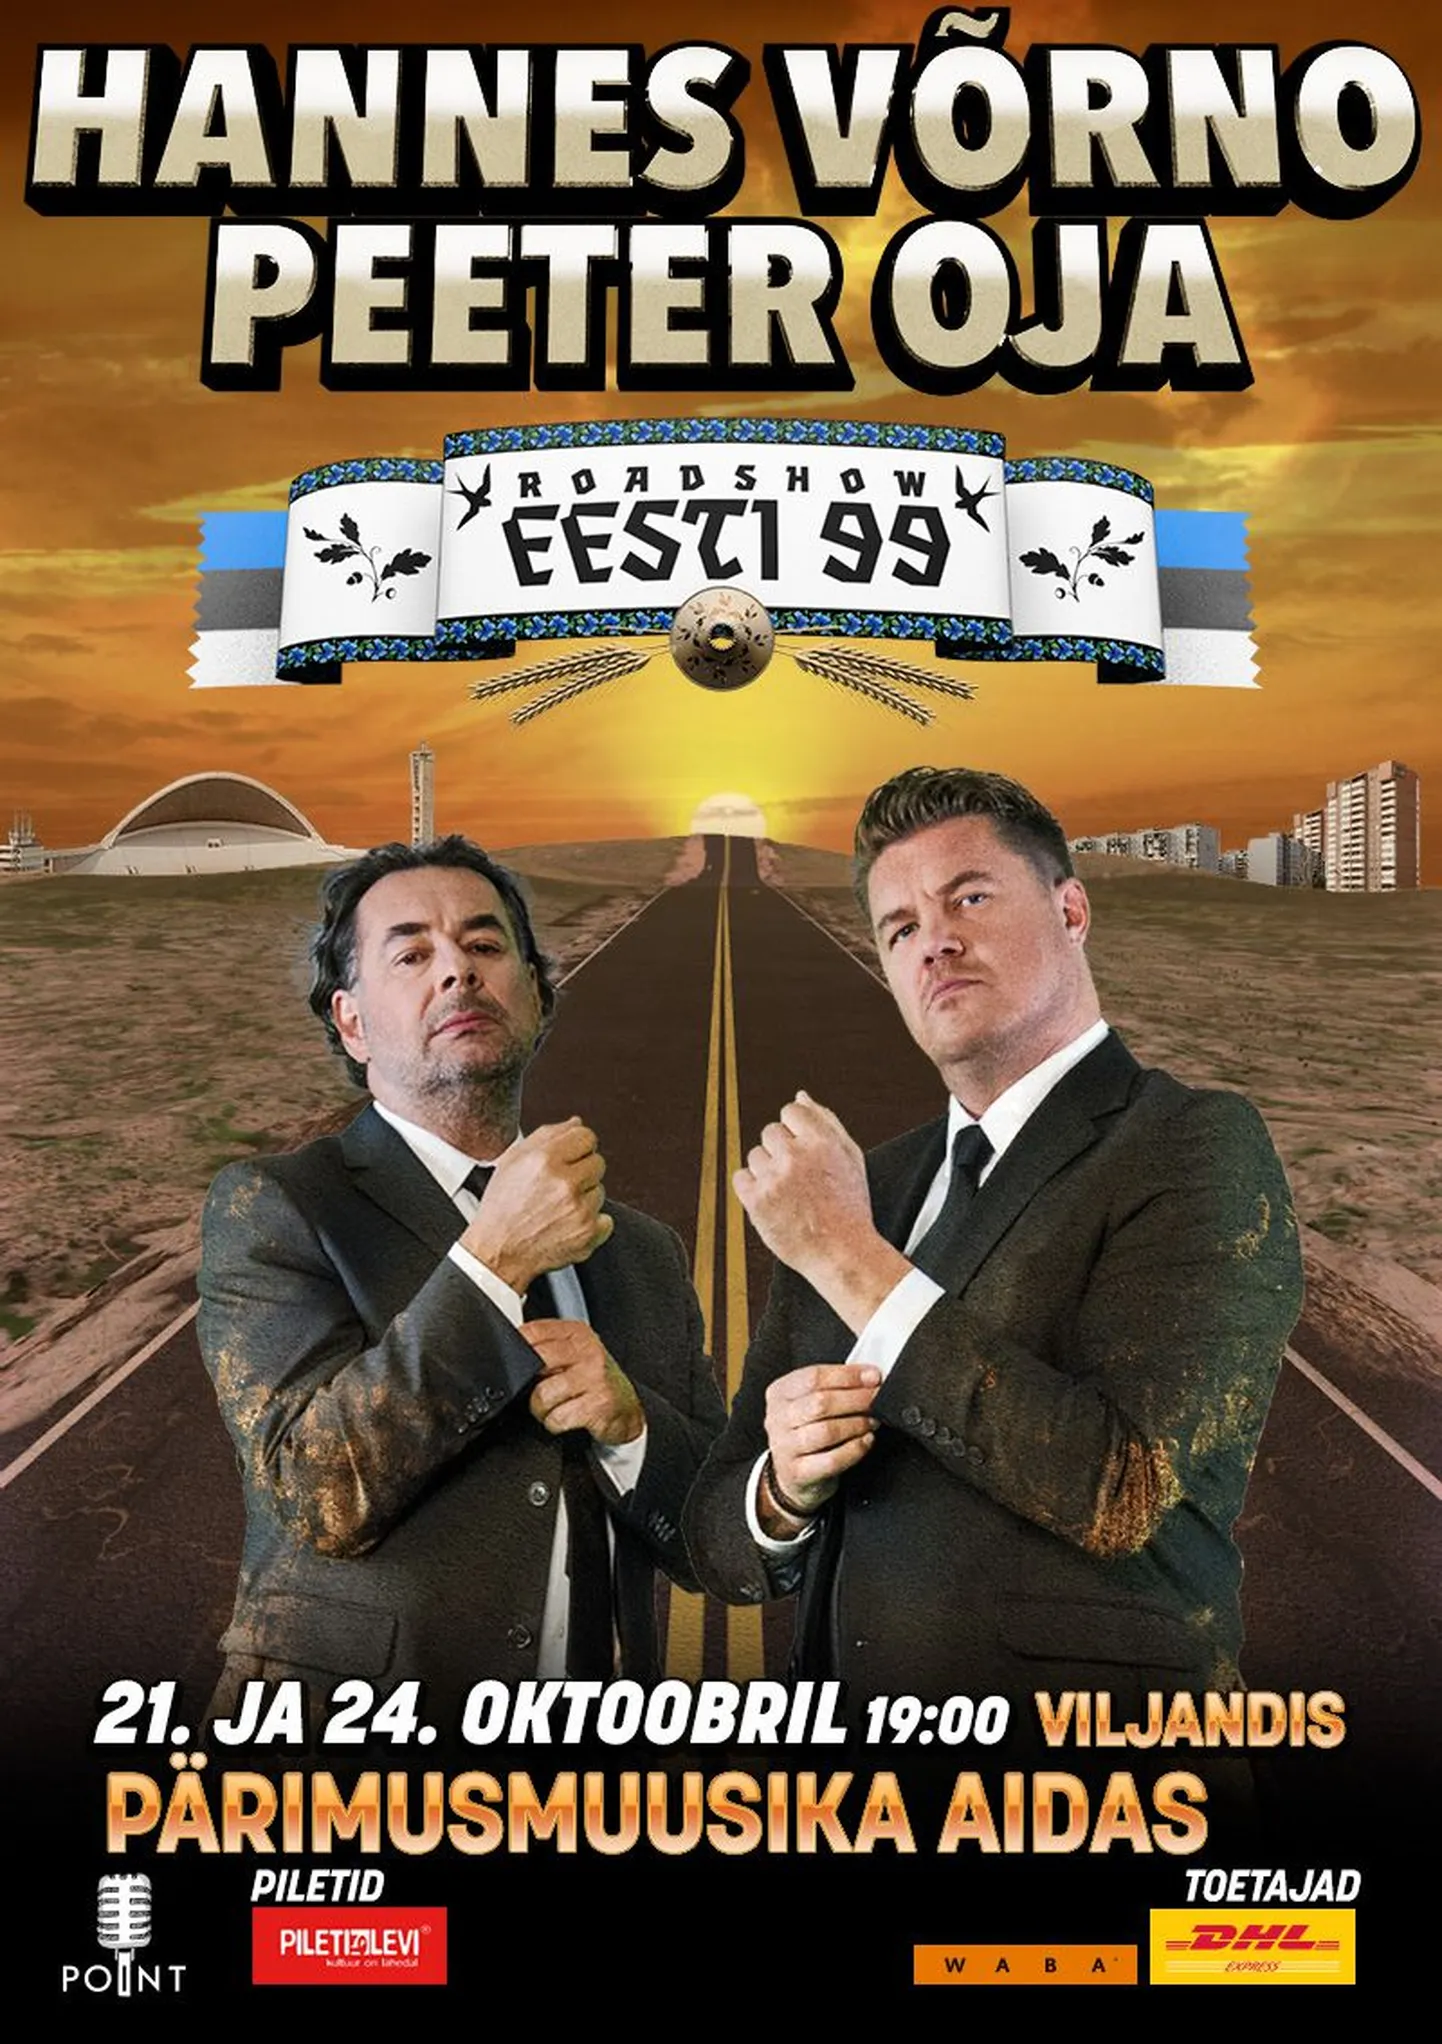 Hannes Võrno ja Peeter Oja roadshow "Eesti 99" pärimusmuusika aidas